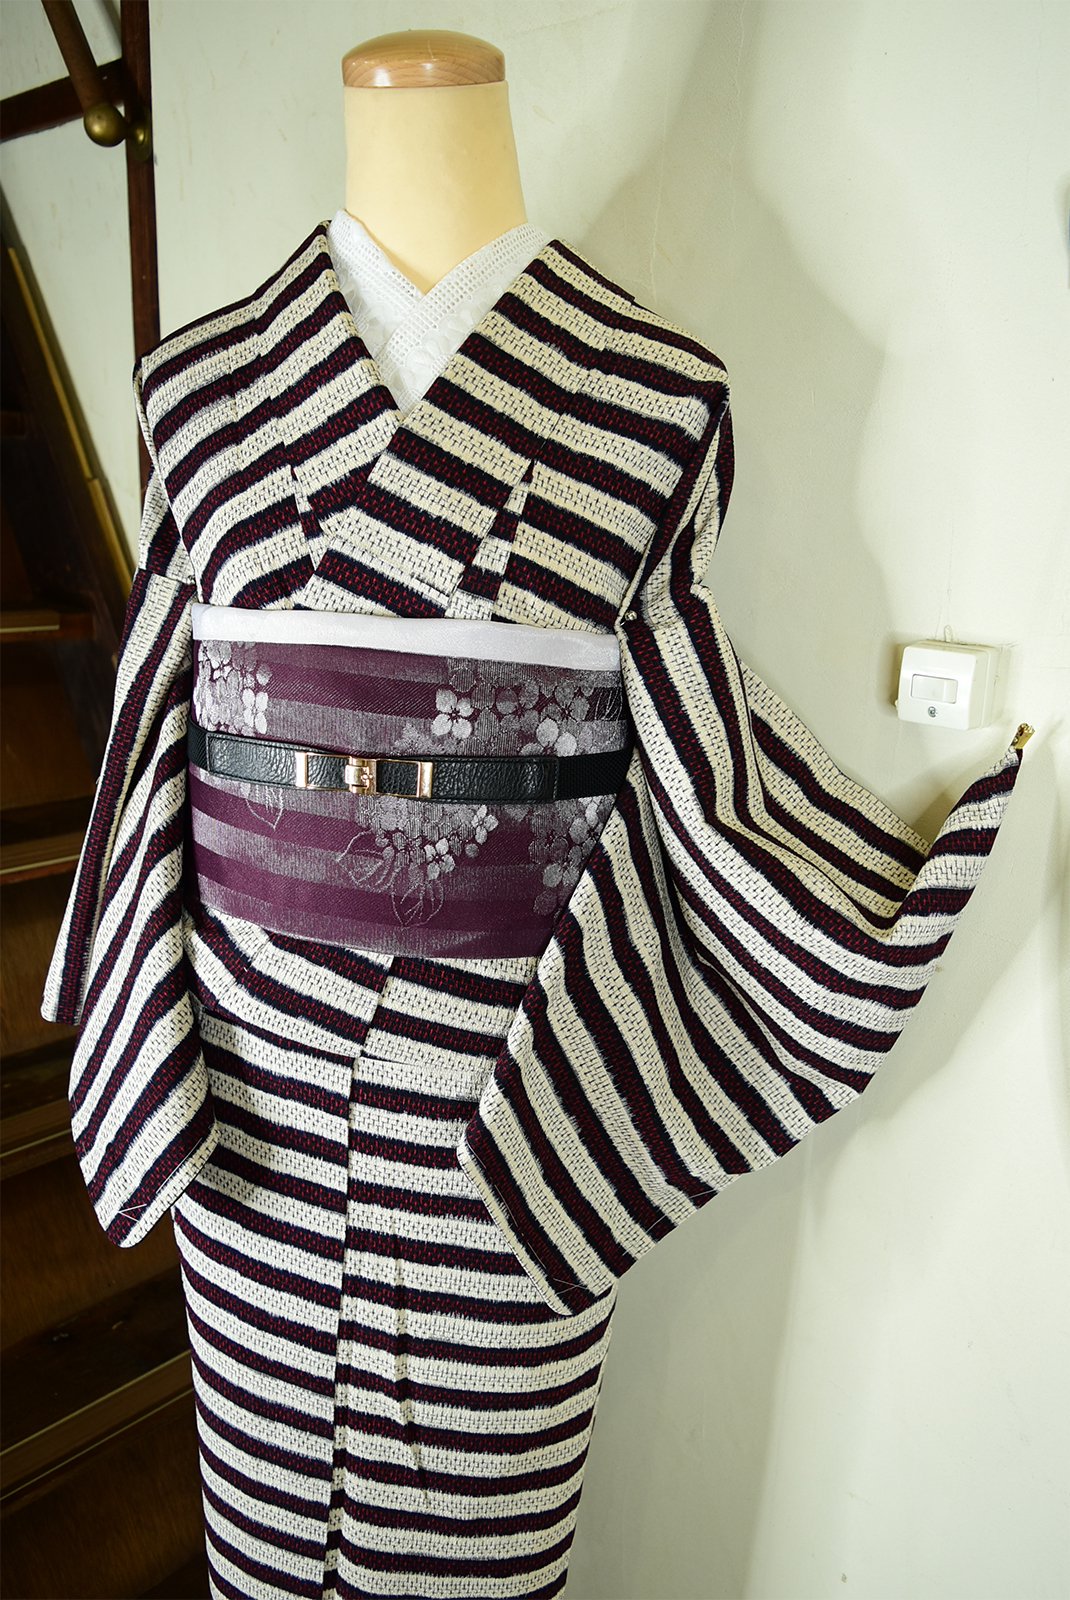 絣ドットのボーダーデザインモダンな正絹御召単着物 - アンティーク着物・リサイクル着物のオンラインショップ 姉妹屋